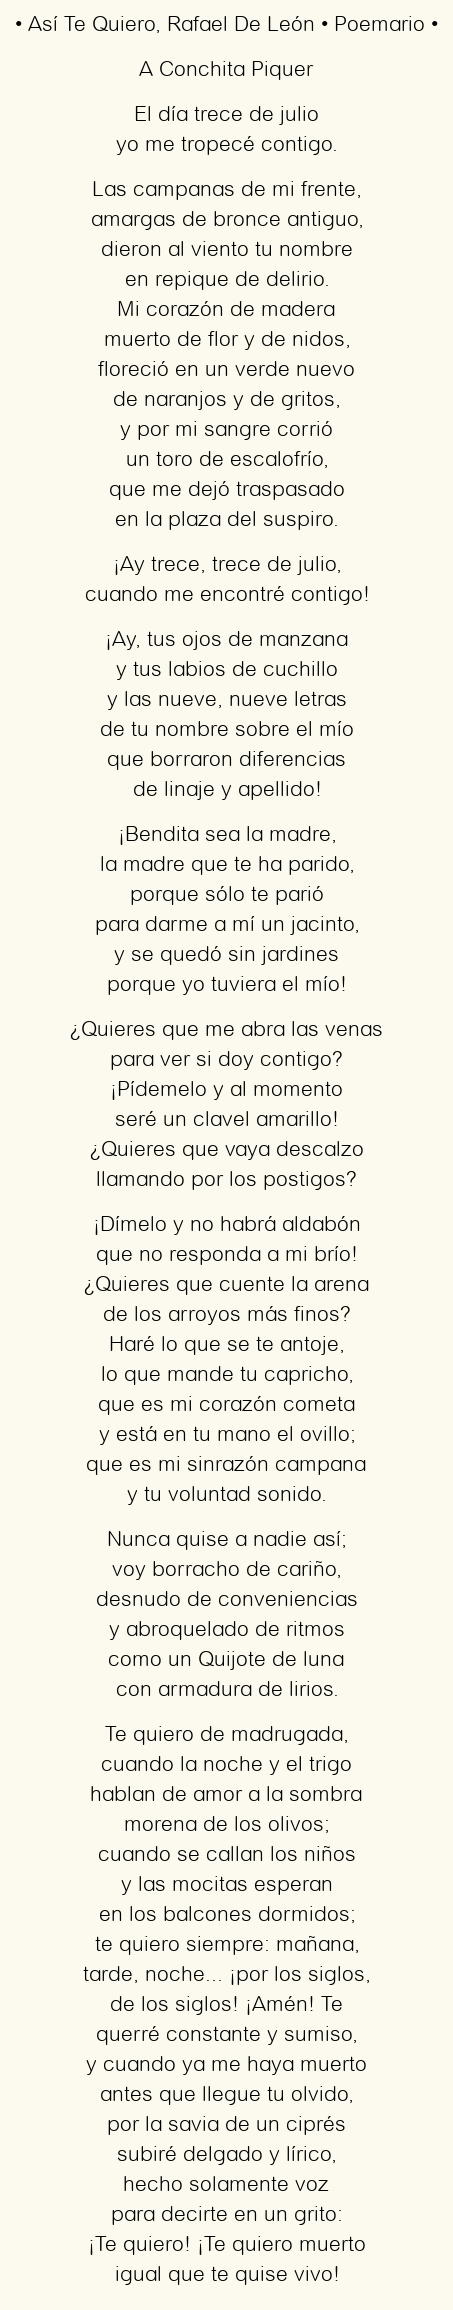 Imagen con el poema Así Te Quiero, por Rafael De León